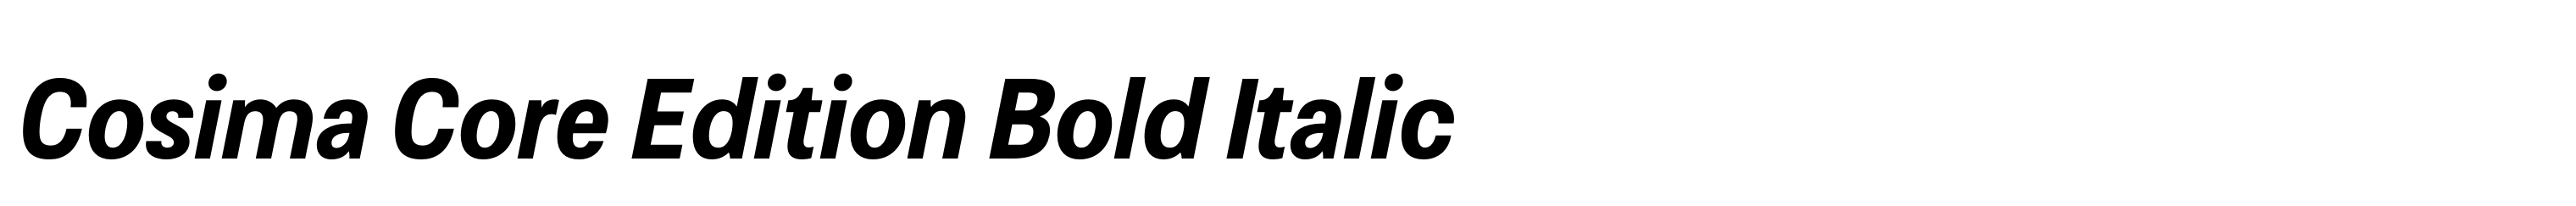 Cosima Core Edition Bold Italic